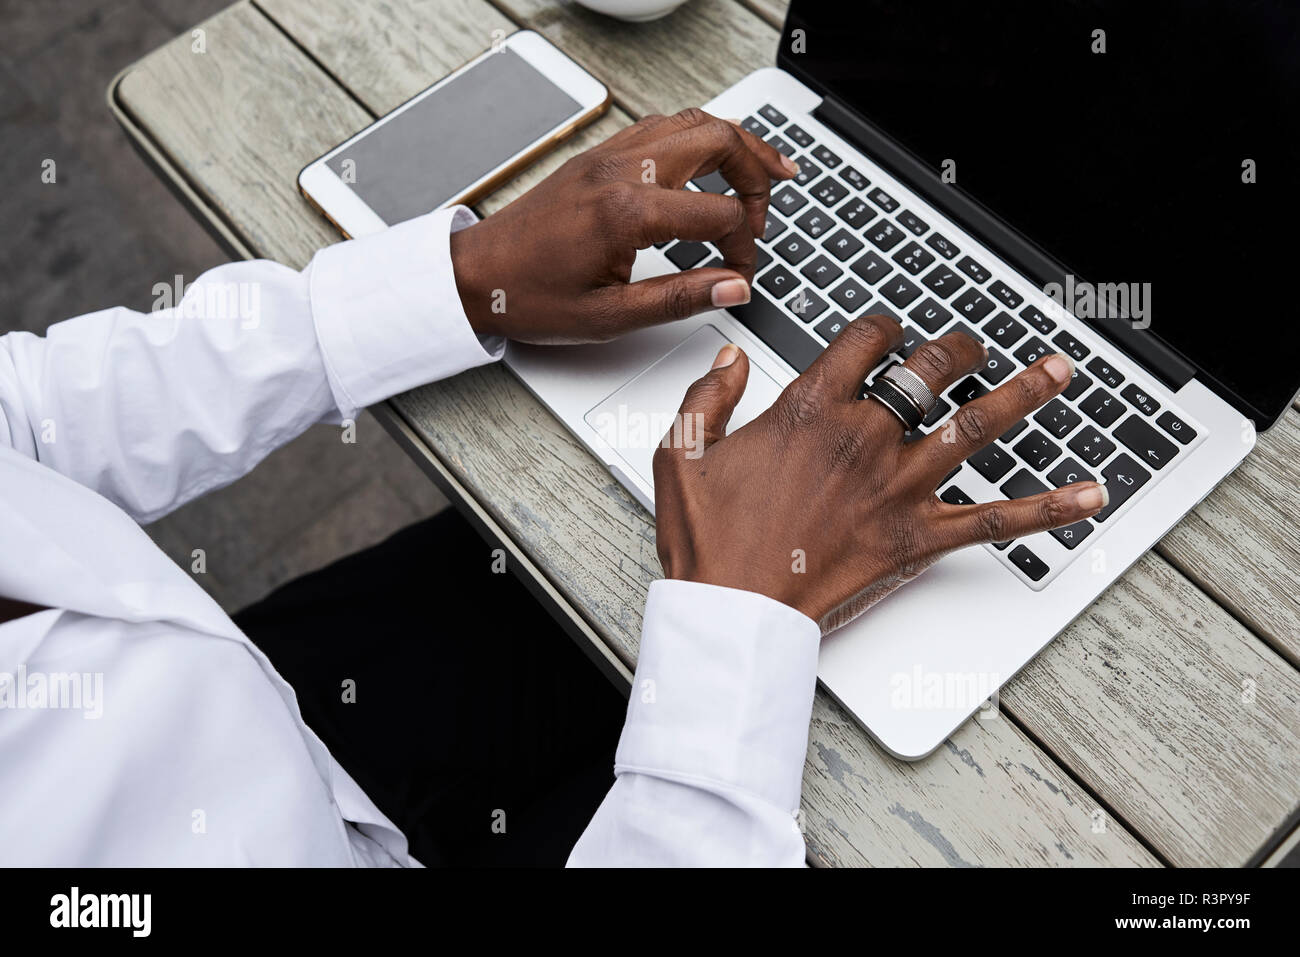 Mains de businesswoman typing on laptop Banque D'Images